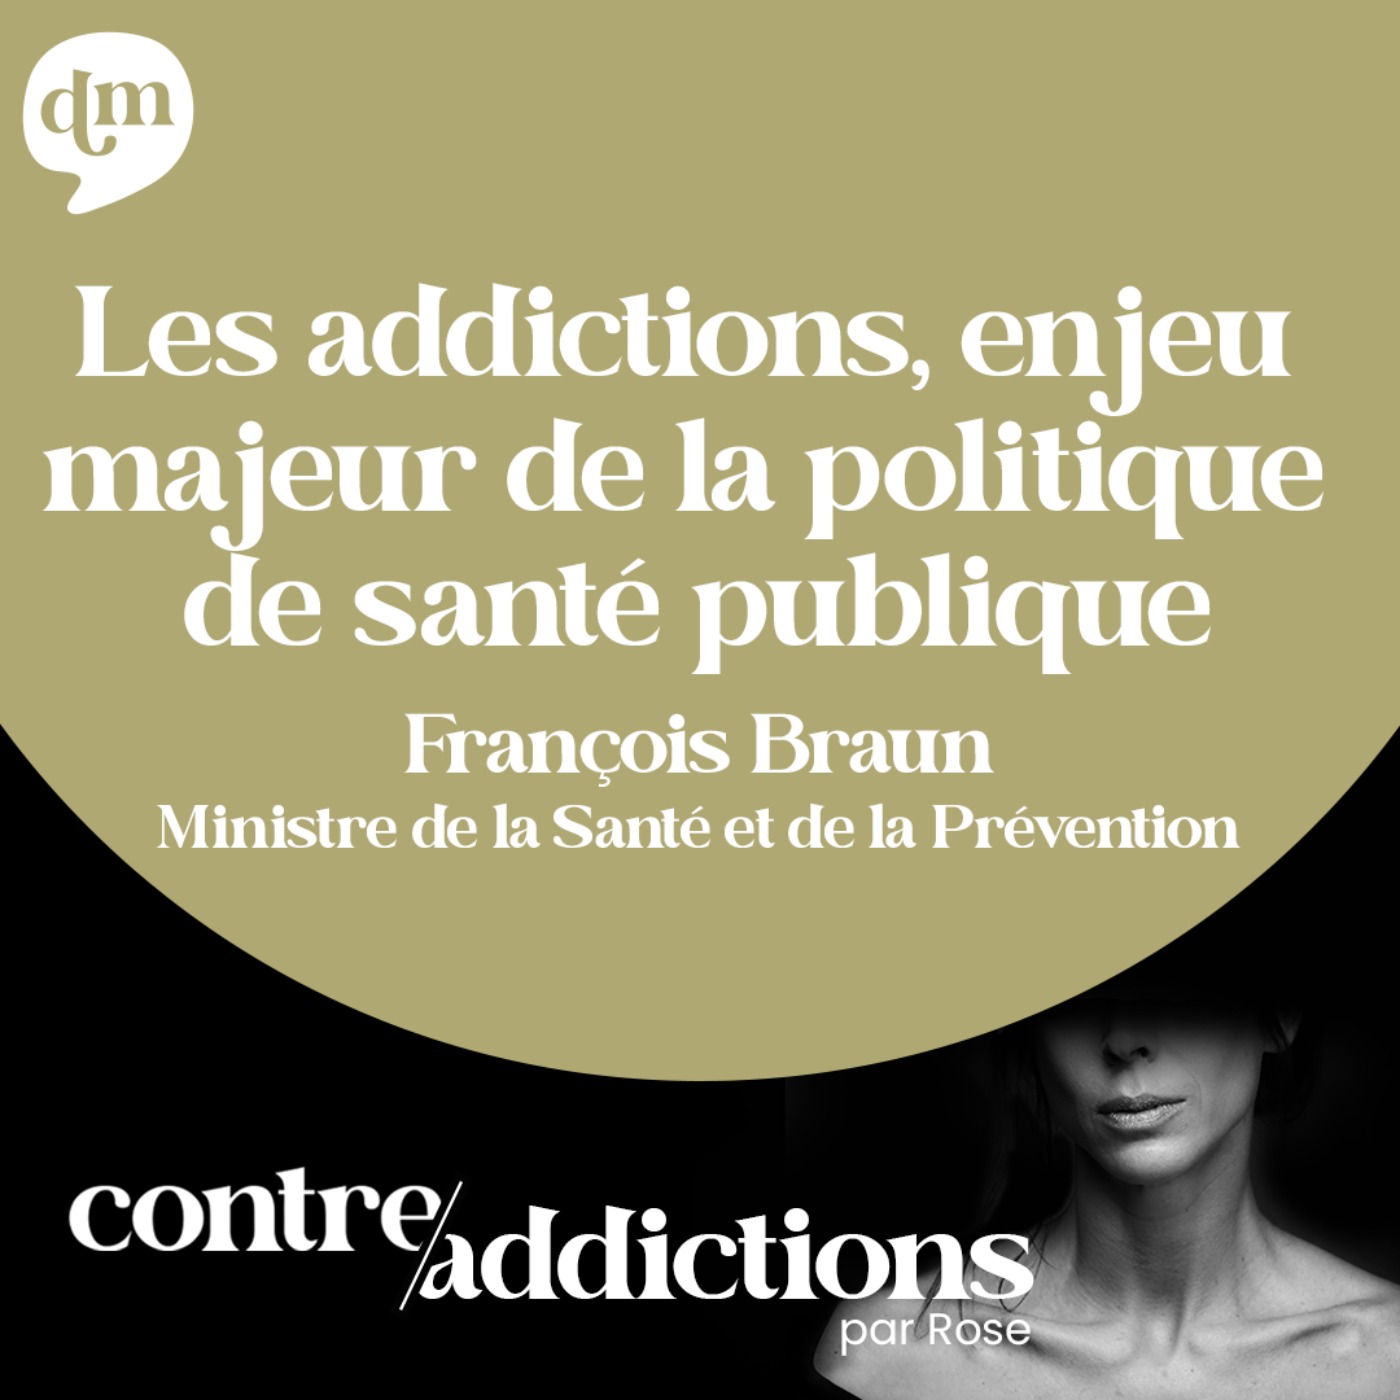 Les addictions, enjeu majeur de la politique de santé publique - François Braun, Ministre de la Santé et de la Prévention